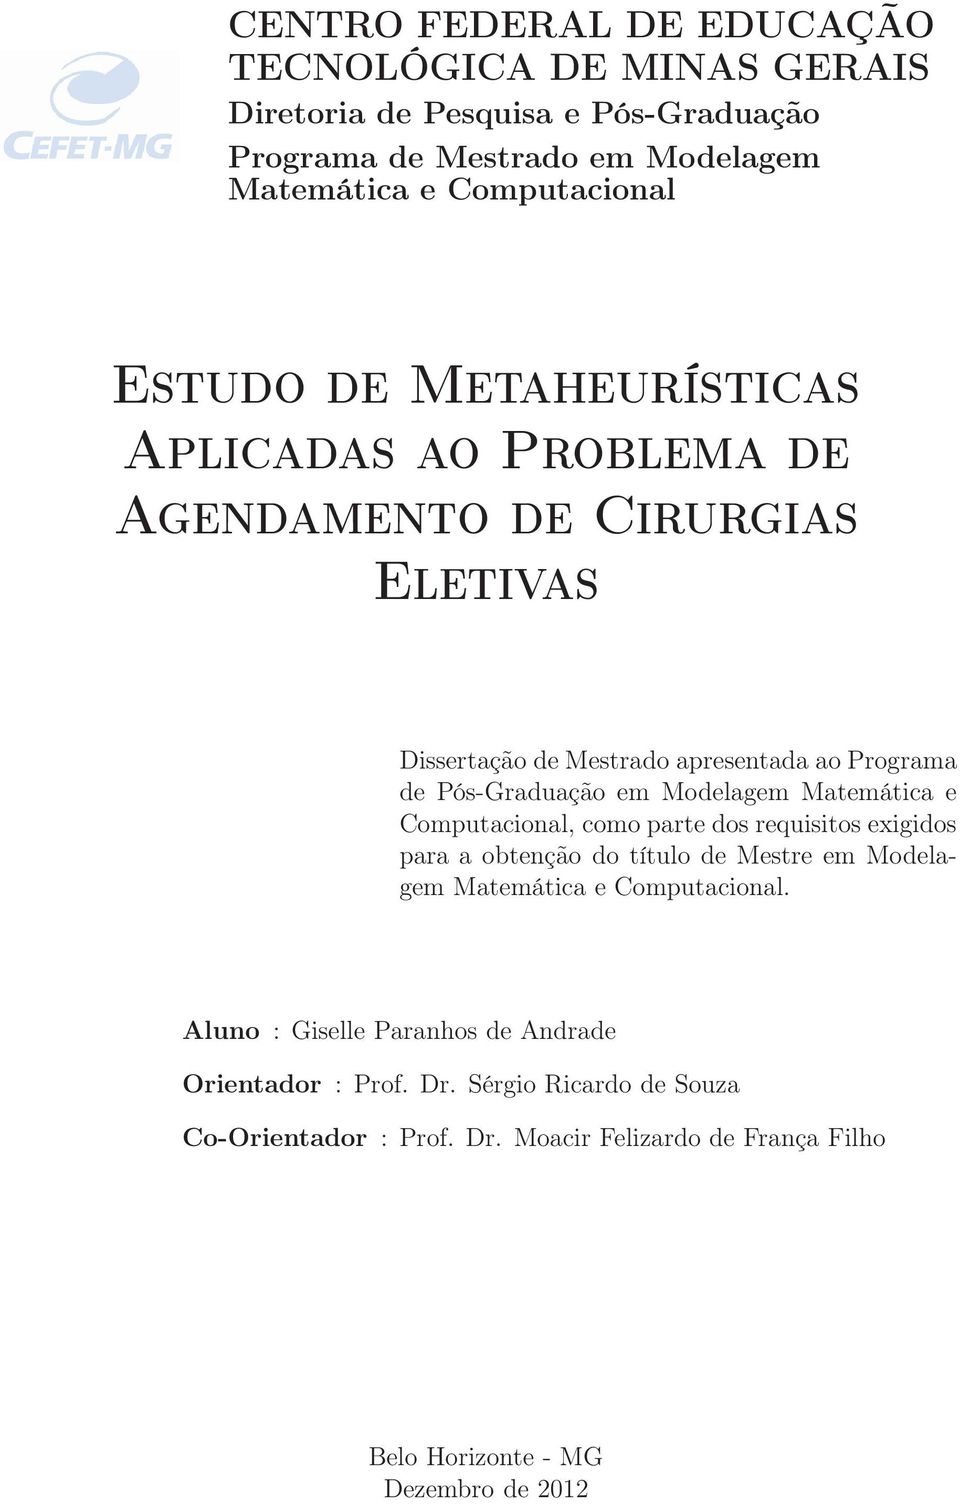 Modelagem Matemática e Computacional, como parte dos requisitos exigidos para a obtenção do título de Mestre em Modelagem Matemática e Computacional.